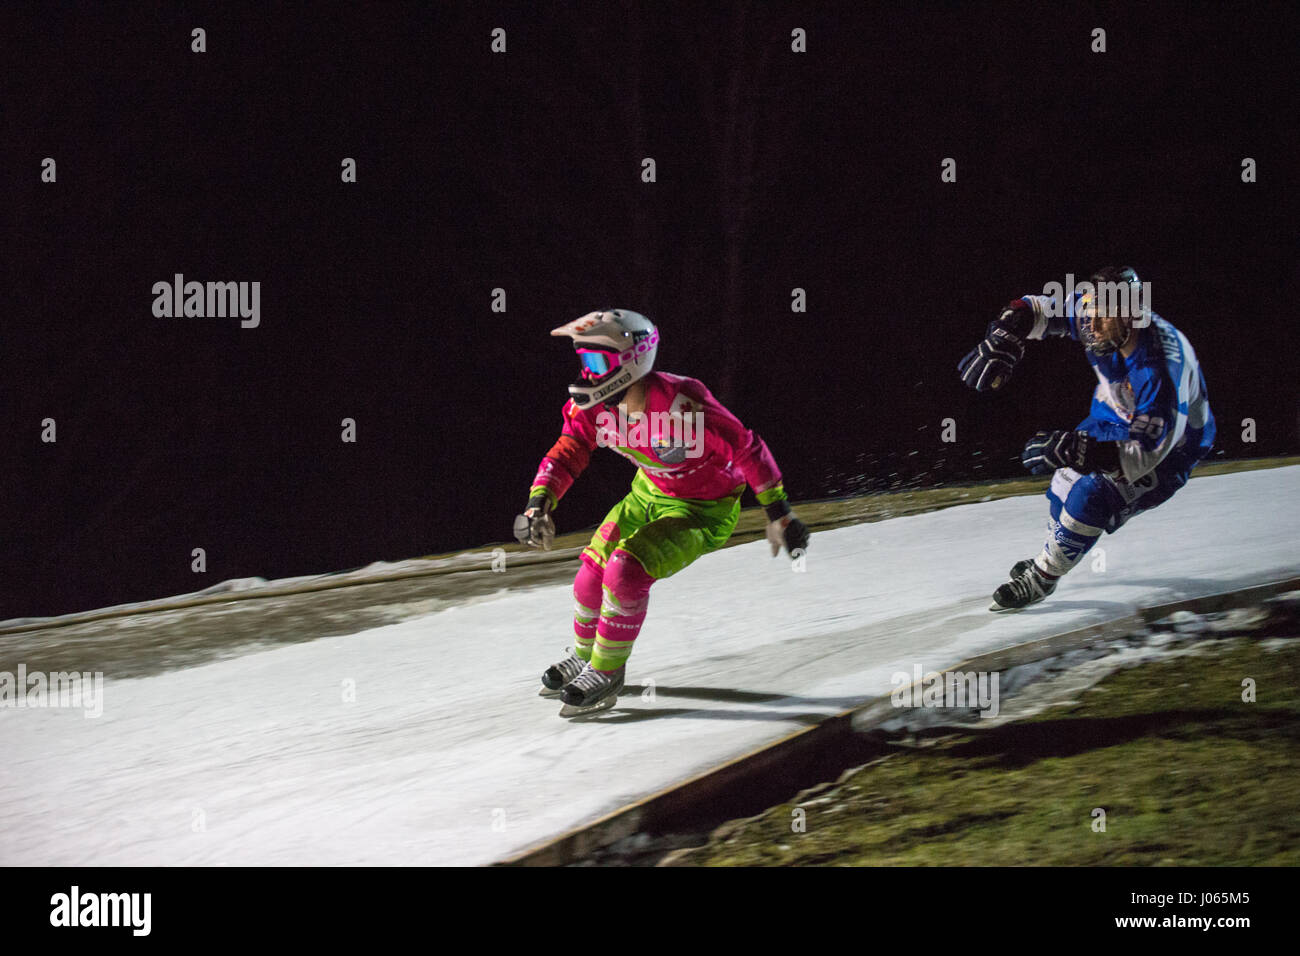 Furchtlos Konkurrent Rennstrecke das 310 Meter lange Eis hinunter auf einer Skipiste in Österreichs Winter Sport Brutstätte Wagrain. Es ist das zweite Rennen in der Eis-Cr Stockfoto